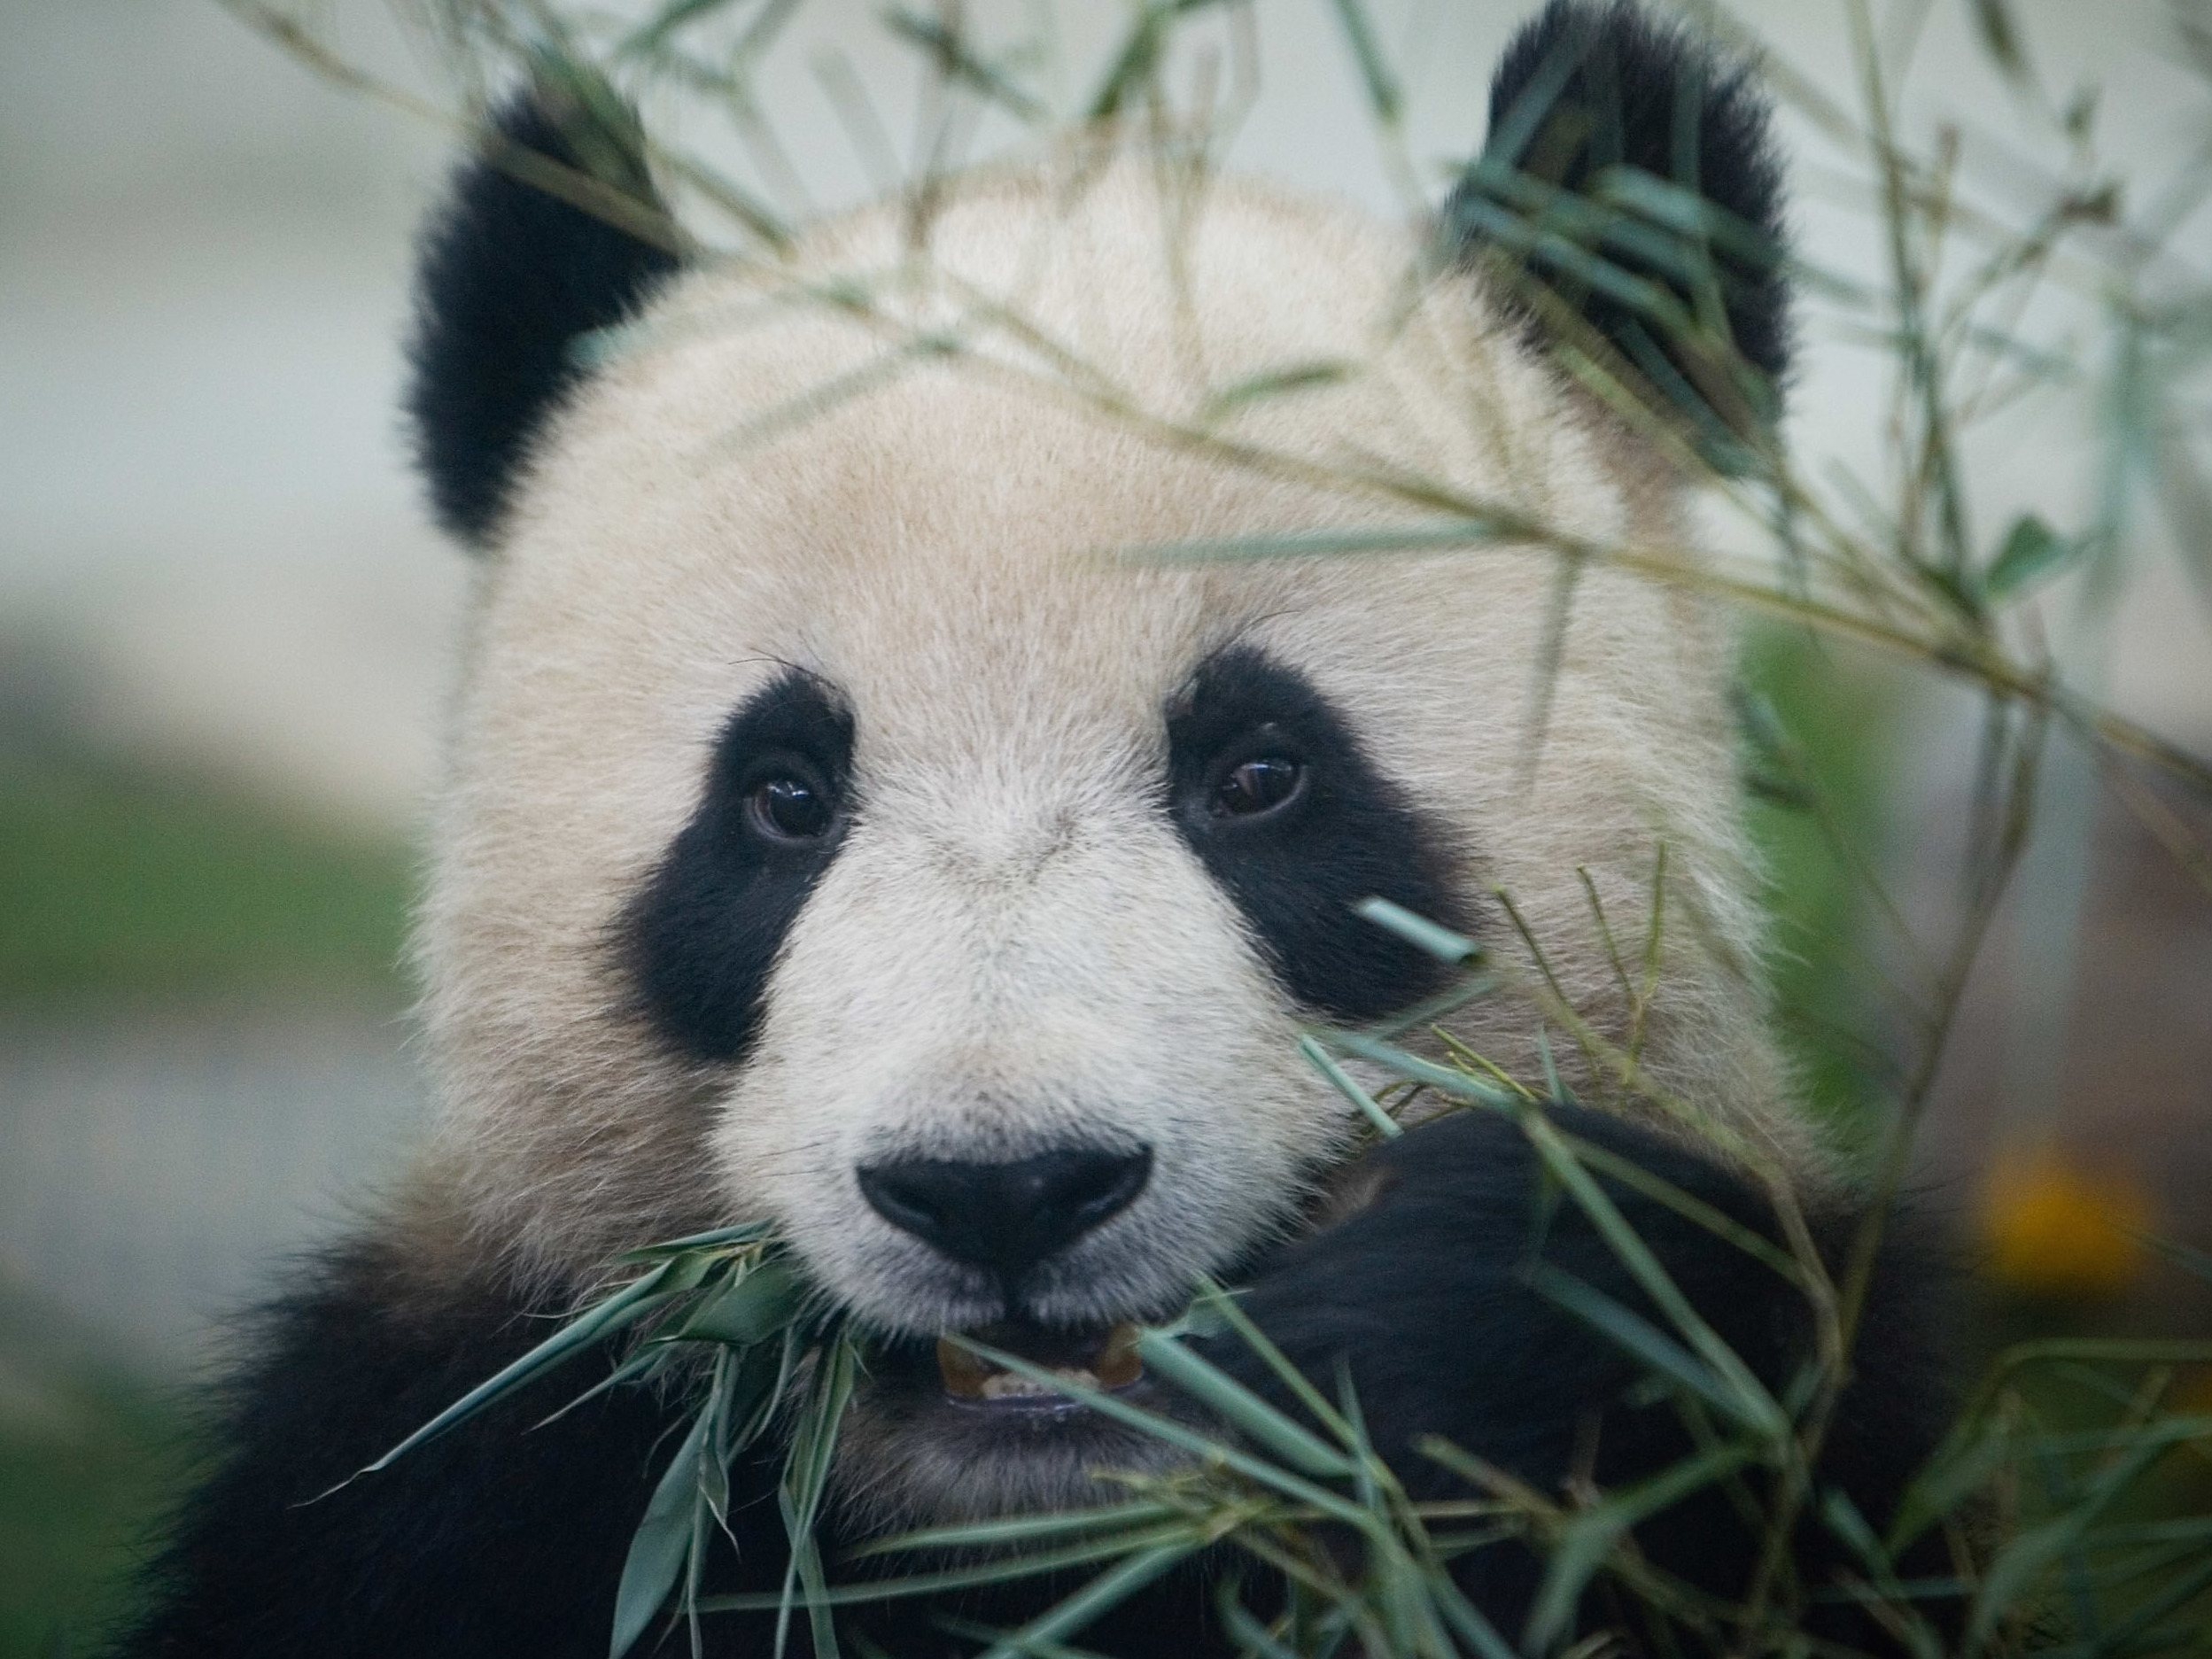 Are giant pandas still endangered 2021?